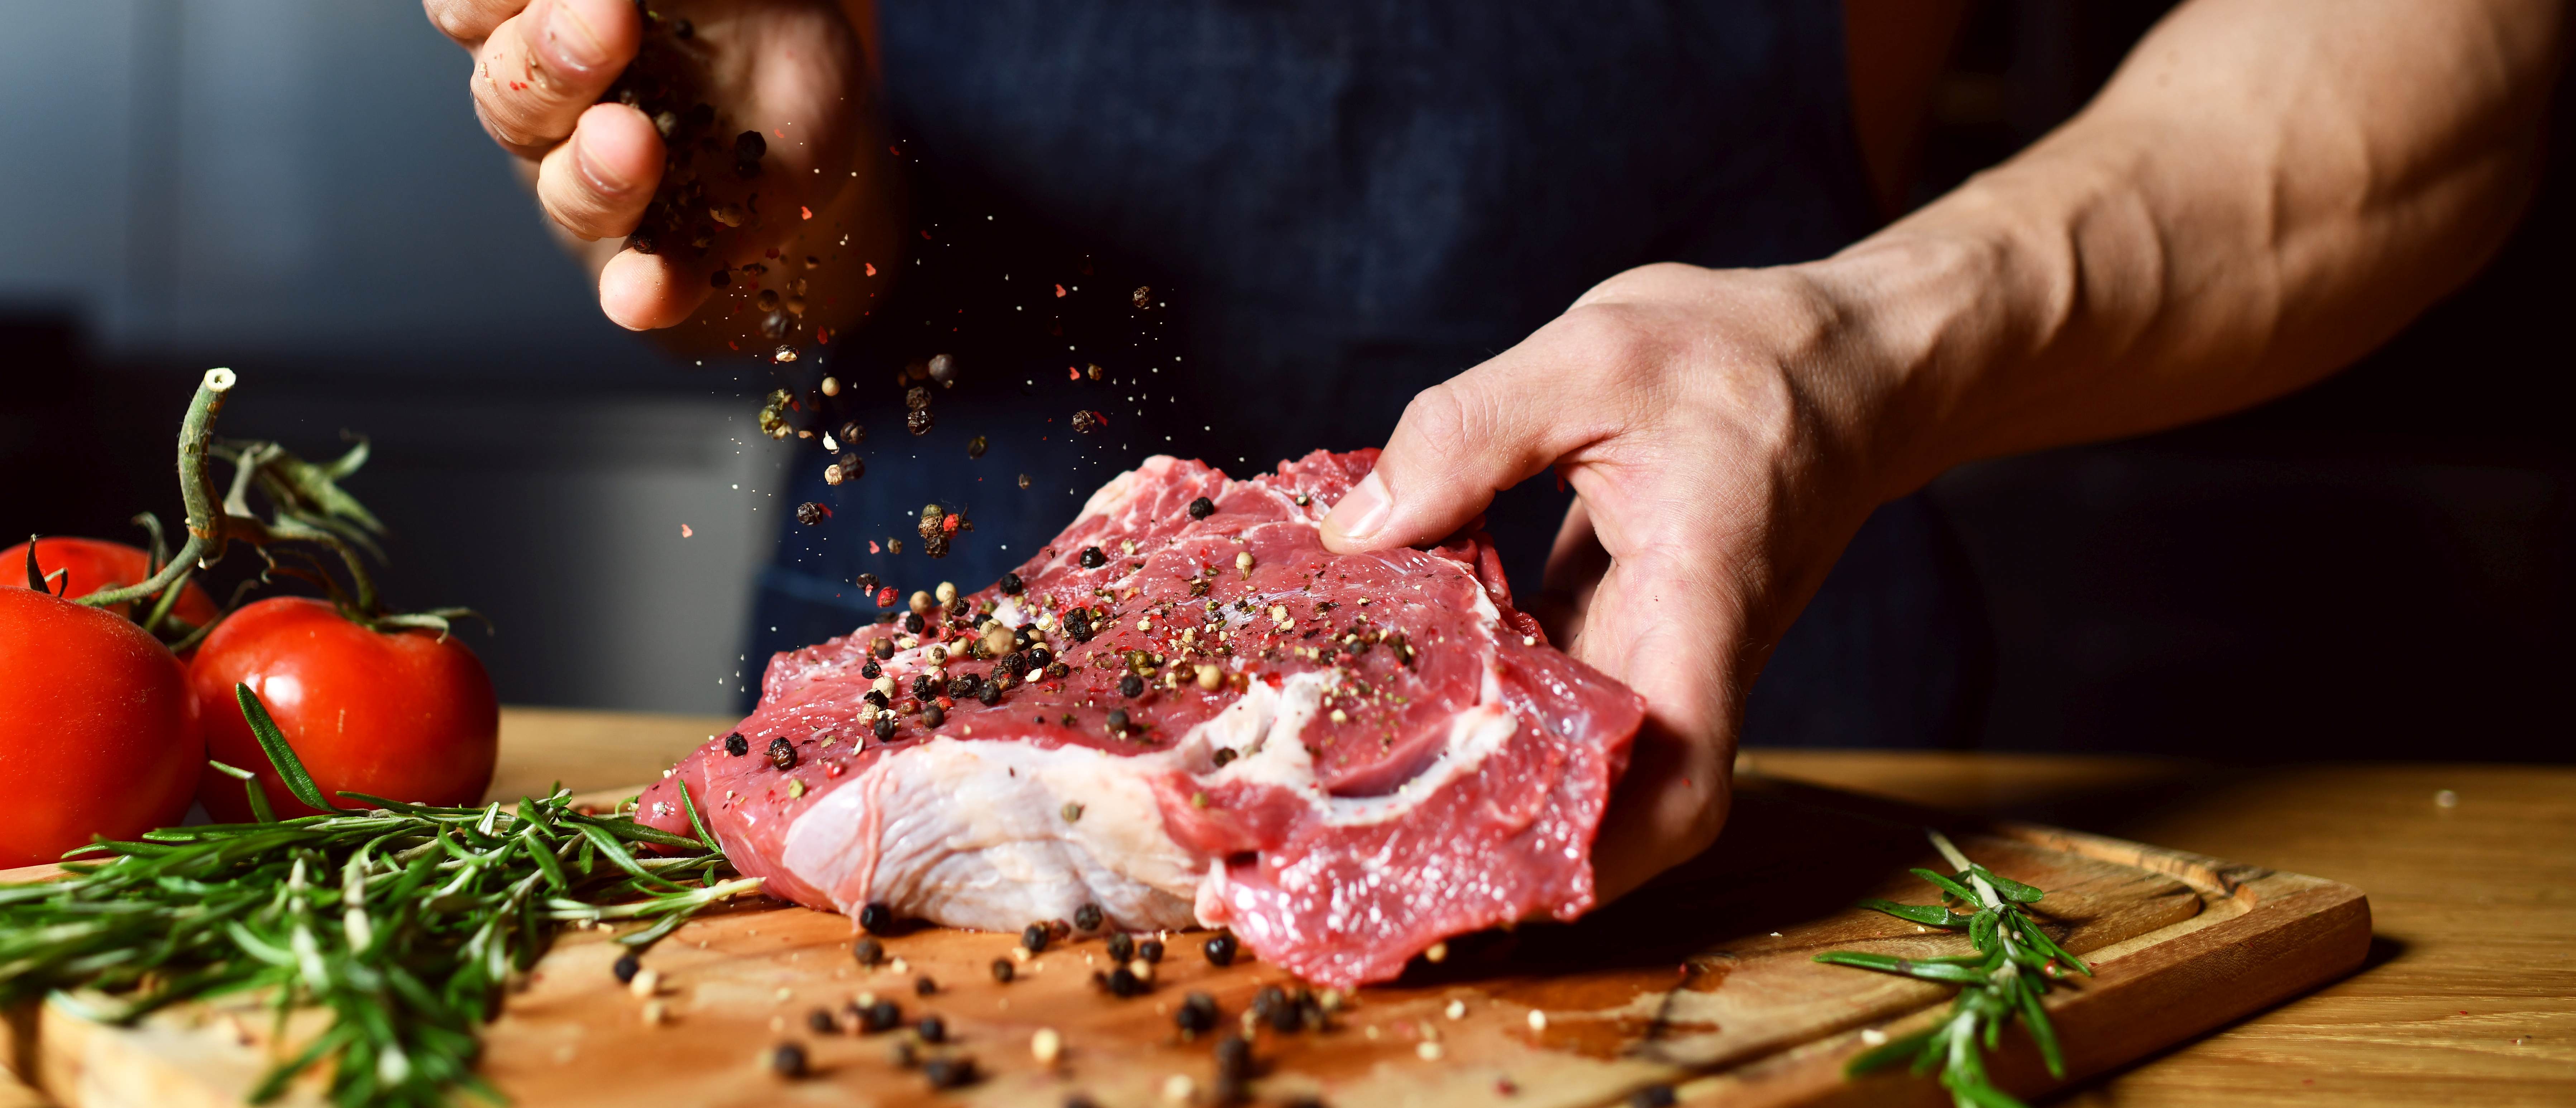 Prečo jesť mäso? Prinášame 5 dôvodov, prečo má konzumácia mäsa zmysel.